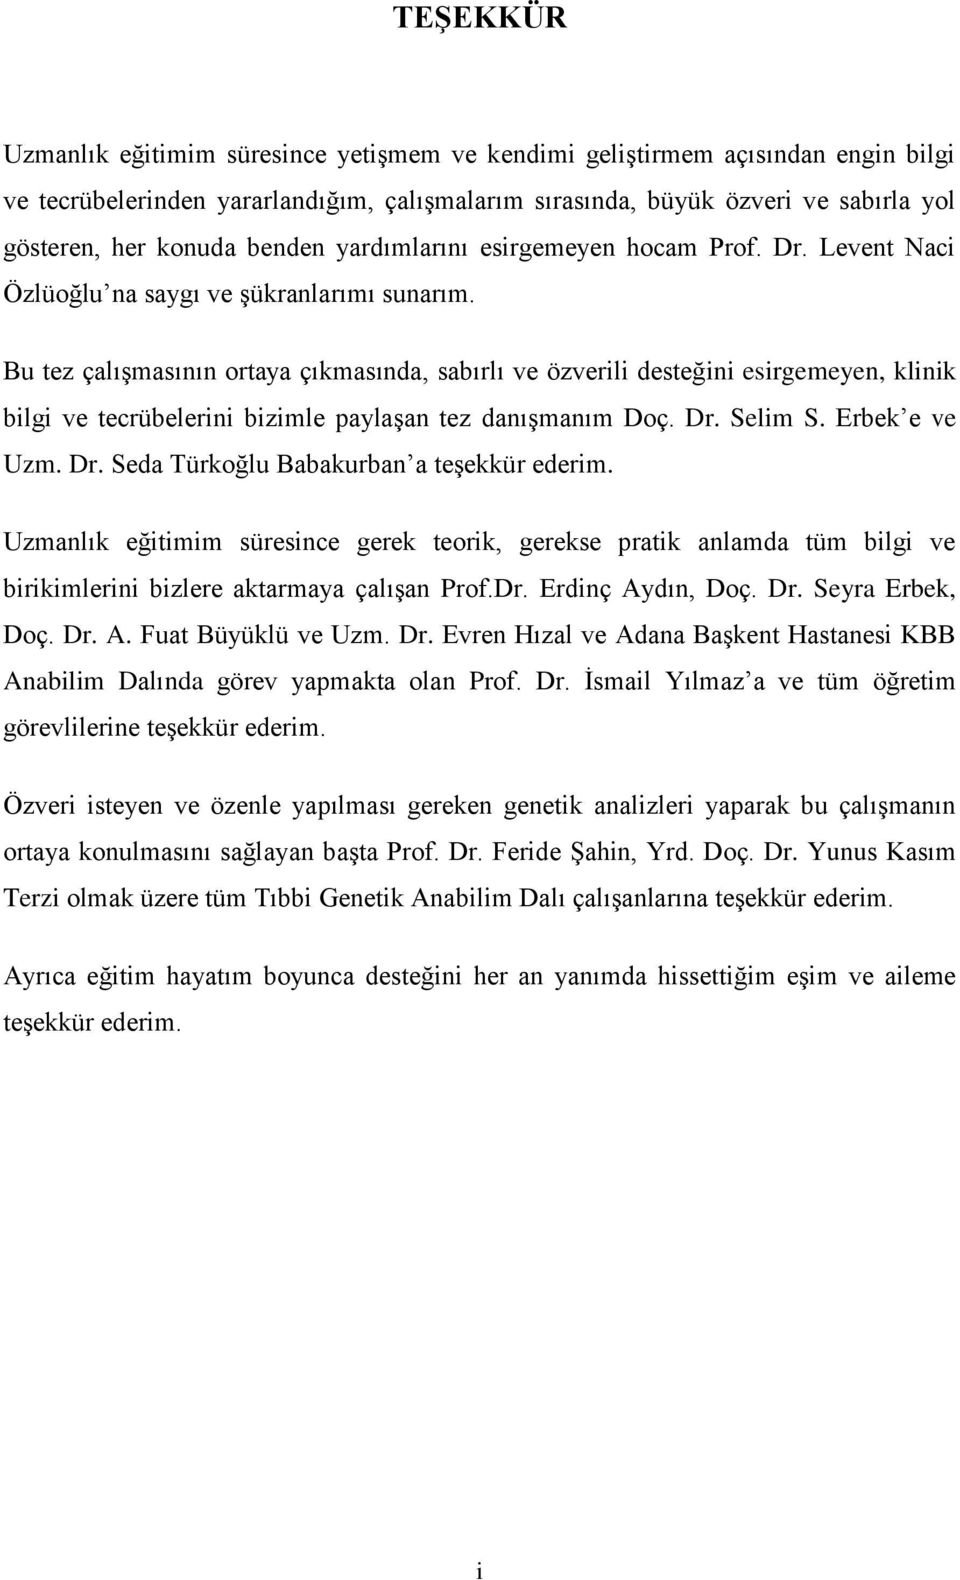 Bu tez çalışmasının ortaya çıkmasında, sabırlı ve özverili desteğini esirgemeyen, klinik bilgi ve tecrübelerini bizimle paylaşan tez danışmanım Doç. Dr. Selim S. Erbek e ve Uzm. Dr. Seda Türkoğlu Babakurban a teşekkür ederim.